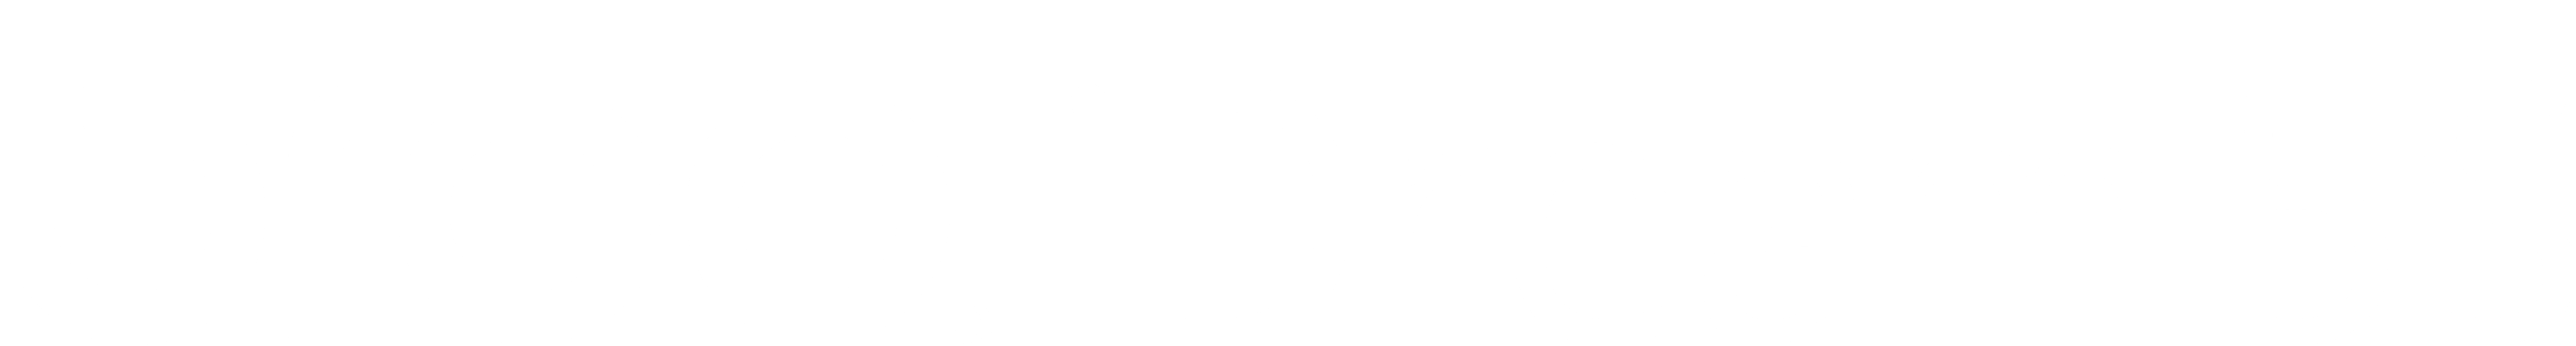 Breo iDream 5 Logo